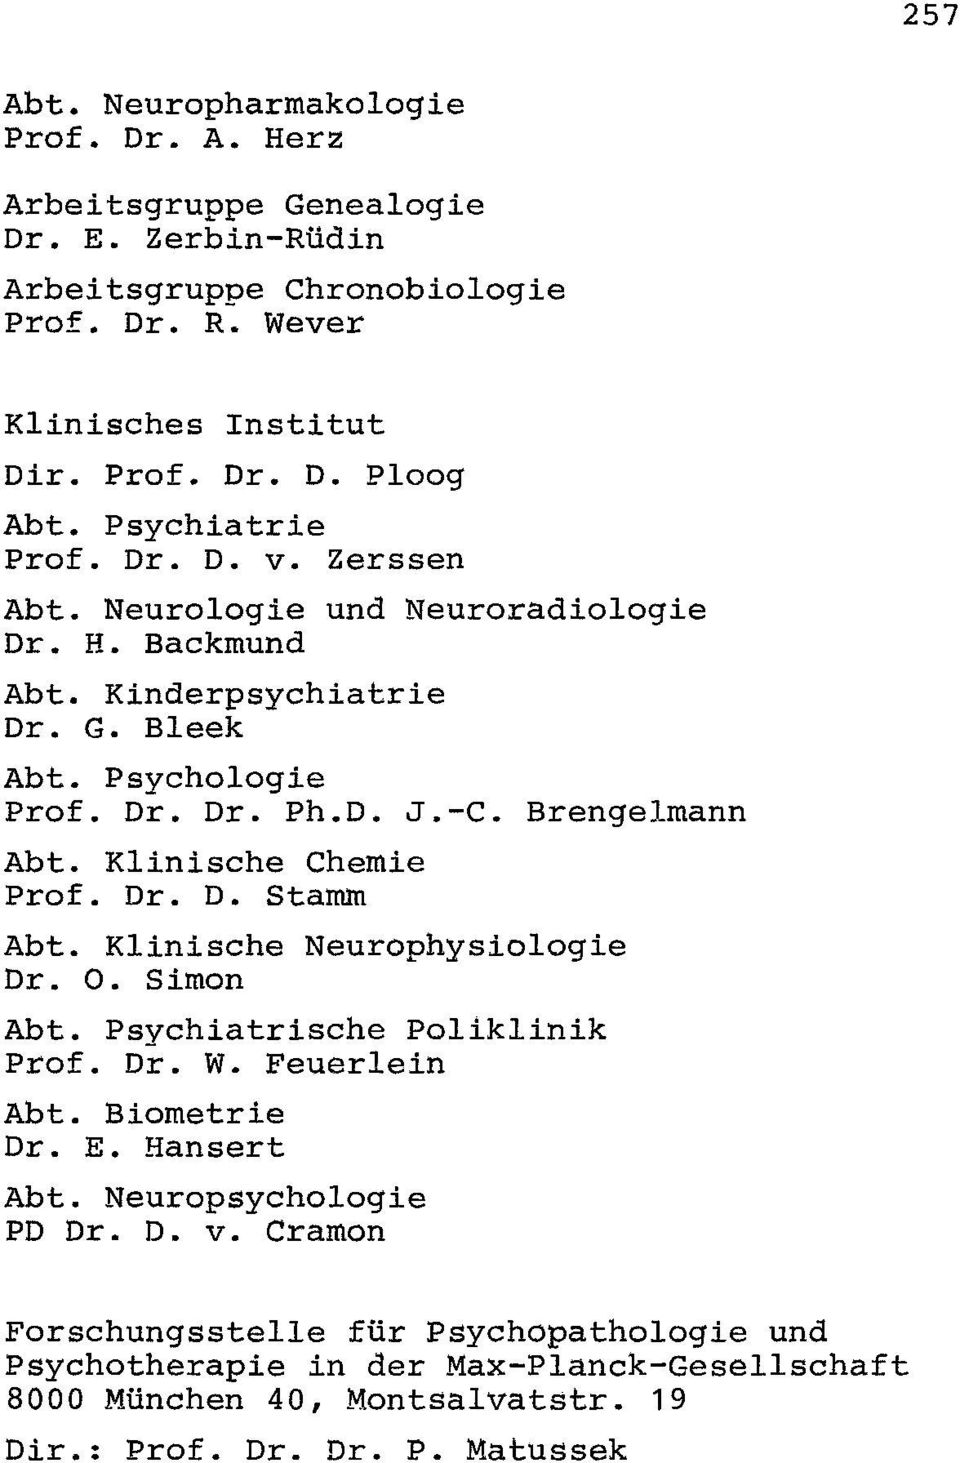 Klinische Chemie Prof. Dr. D. Stamm Abt. Klinische Neurophysiologie Dr. O. Simon Abt. Psvchiatrische Poliklinik prof. Dr. W. Feuerlein Abt. Biometrie Dr. E. Hansert Abt.